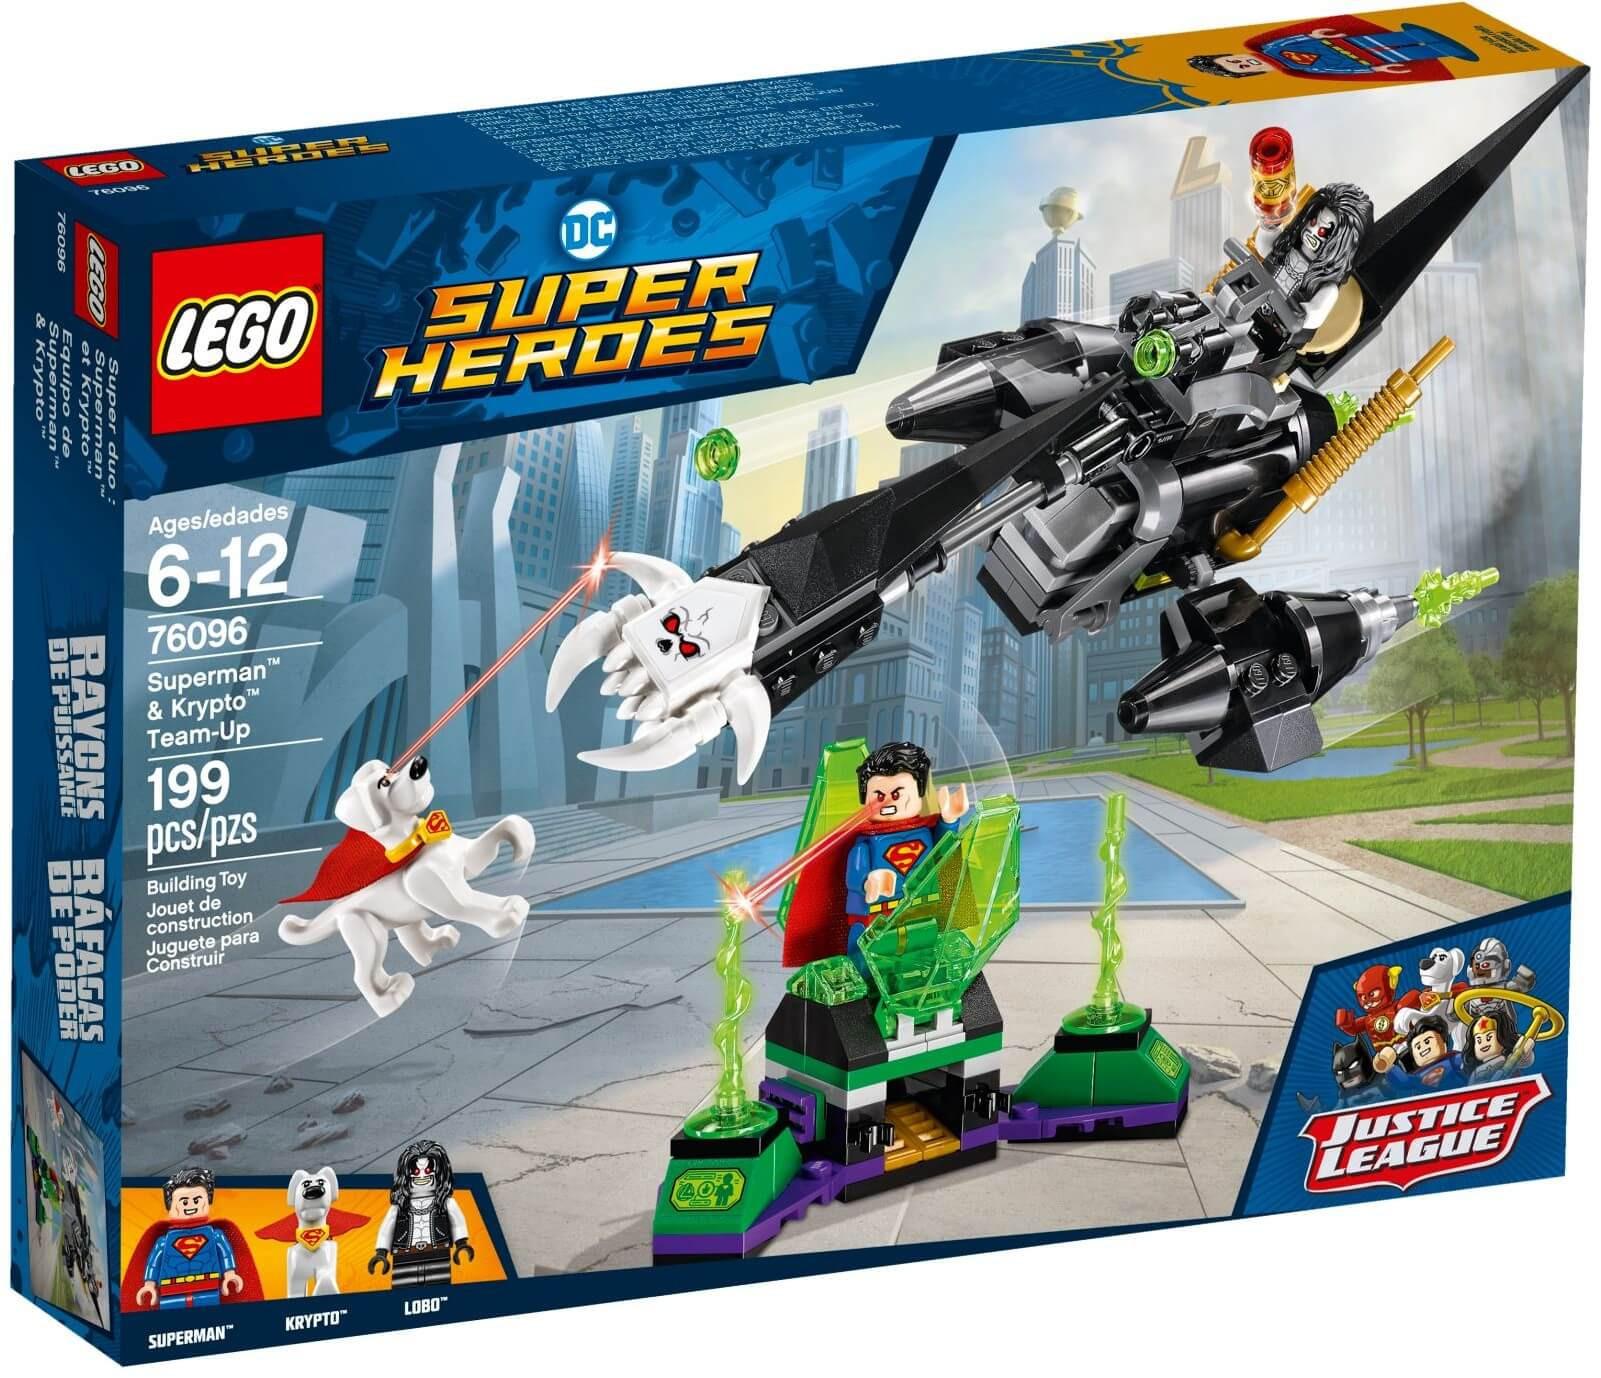 Mua đồ chơi LEGO DC Comics Super Heroes 76096 - Superman và chú chó Krypto (LEGO DC Comics Super Heroes 76096 Superman & Krypto Team-Up)